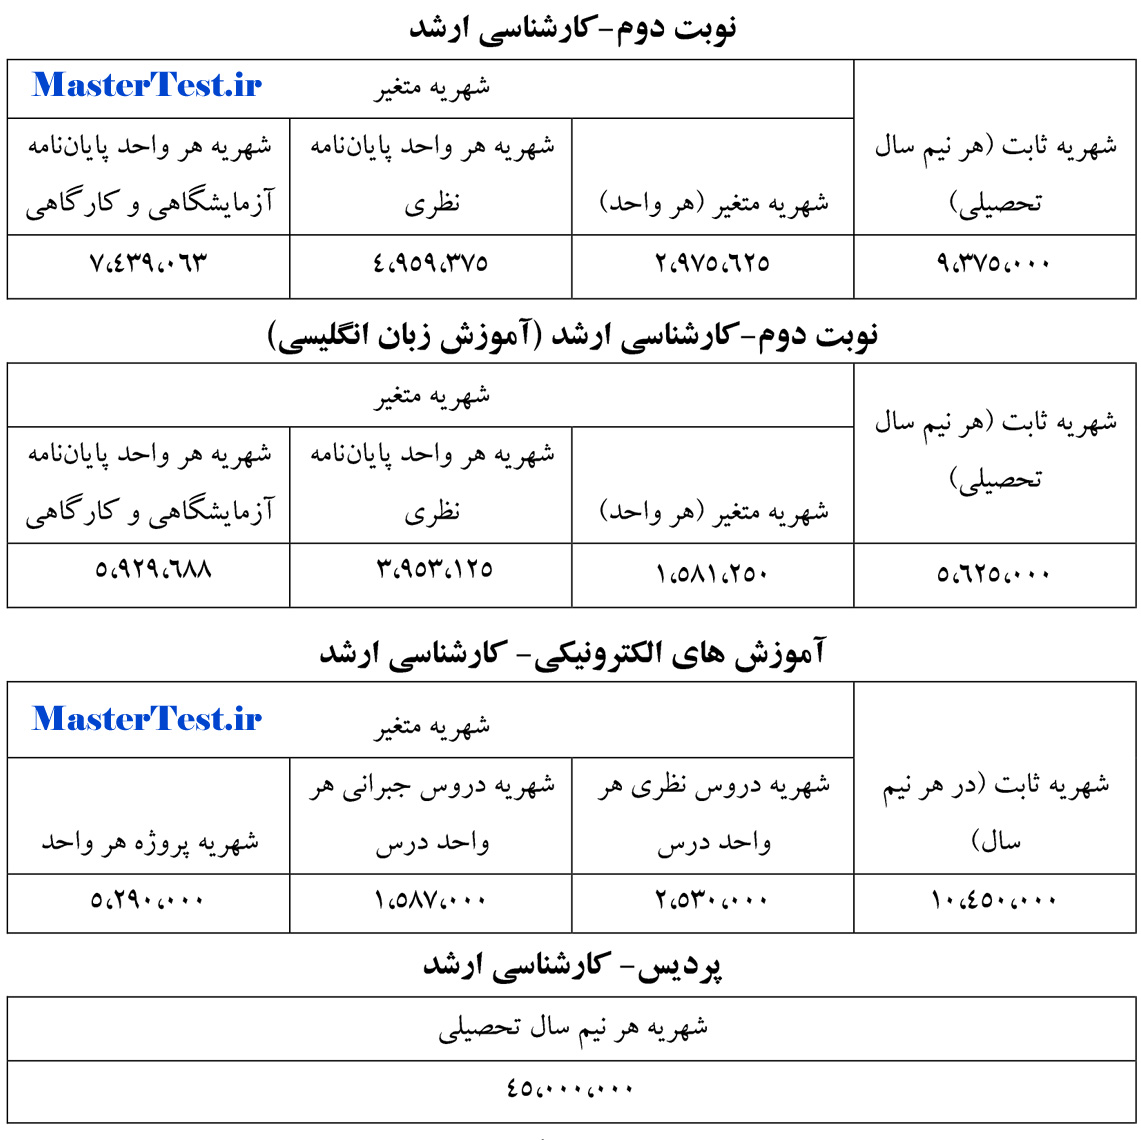 شهریه ارشد شبانه و پردیس 96 - 97 صنعتی اصفهان